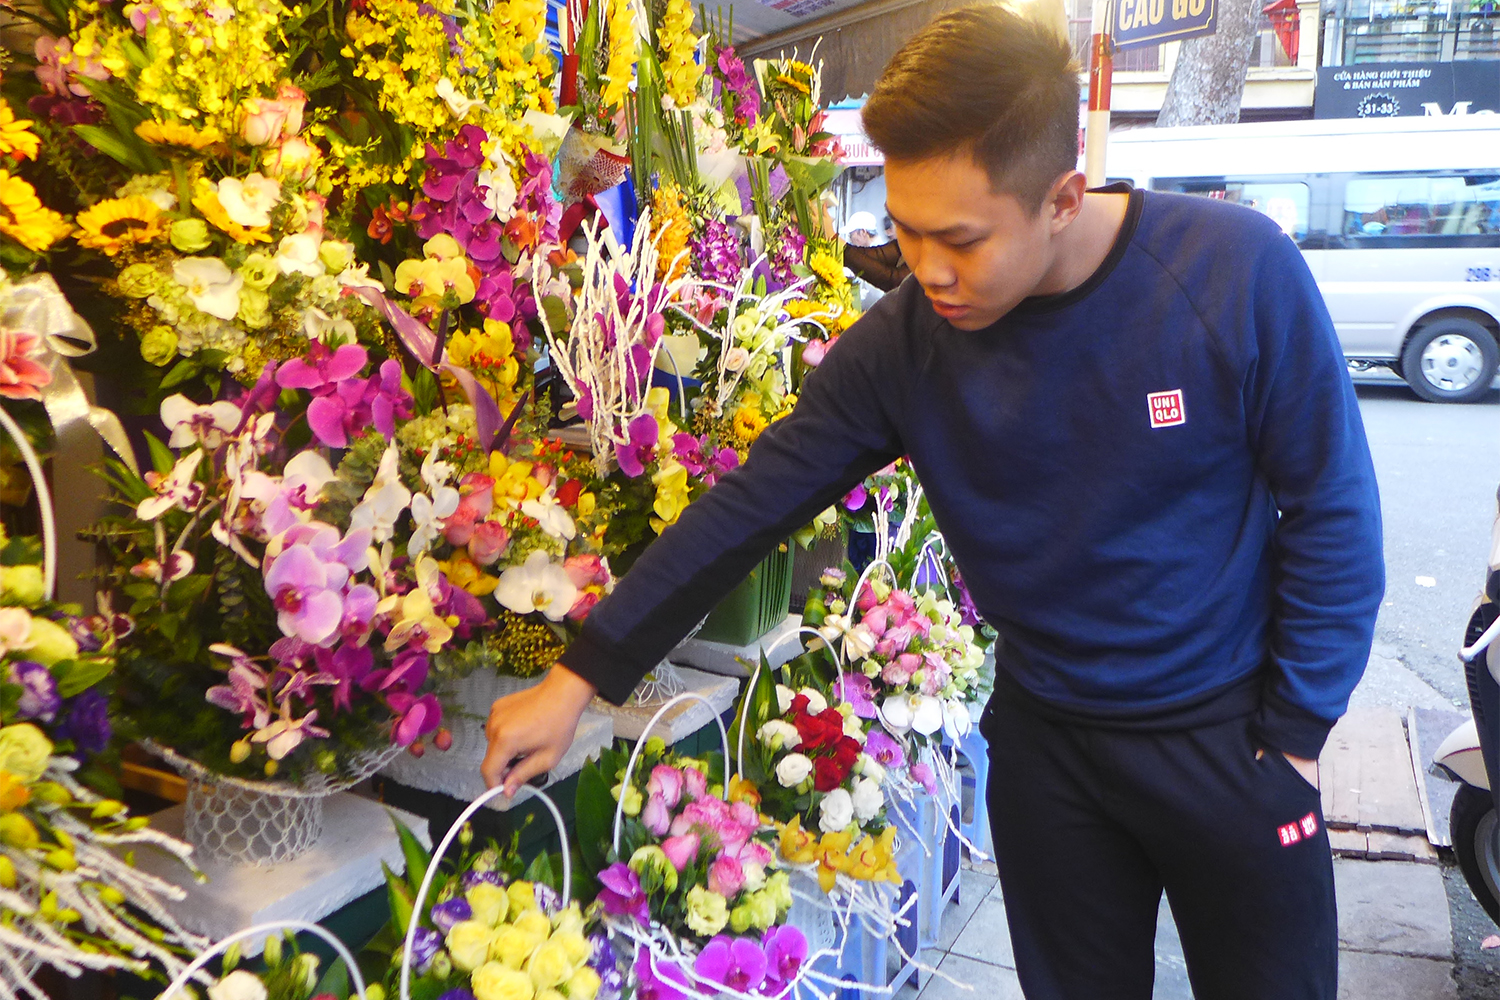 ​Les Vietnamiens adorent les fleurs et en achètent souvent. ​